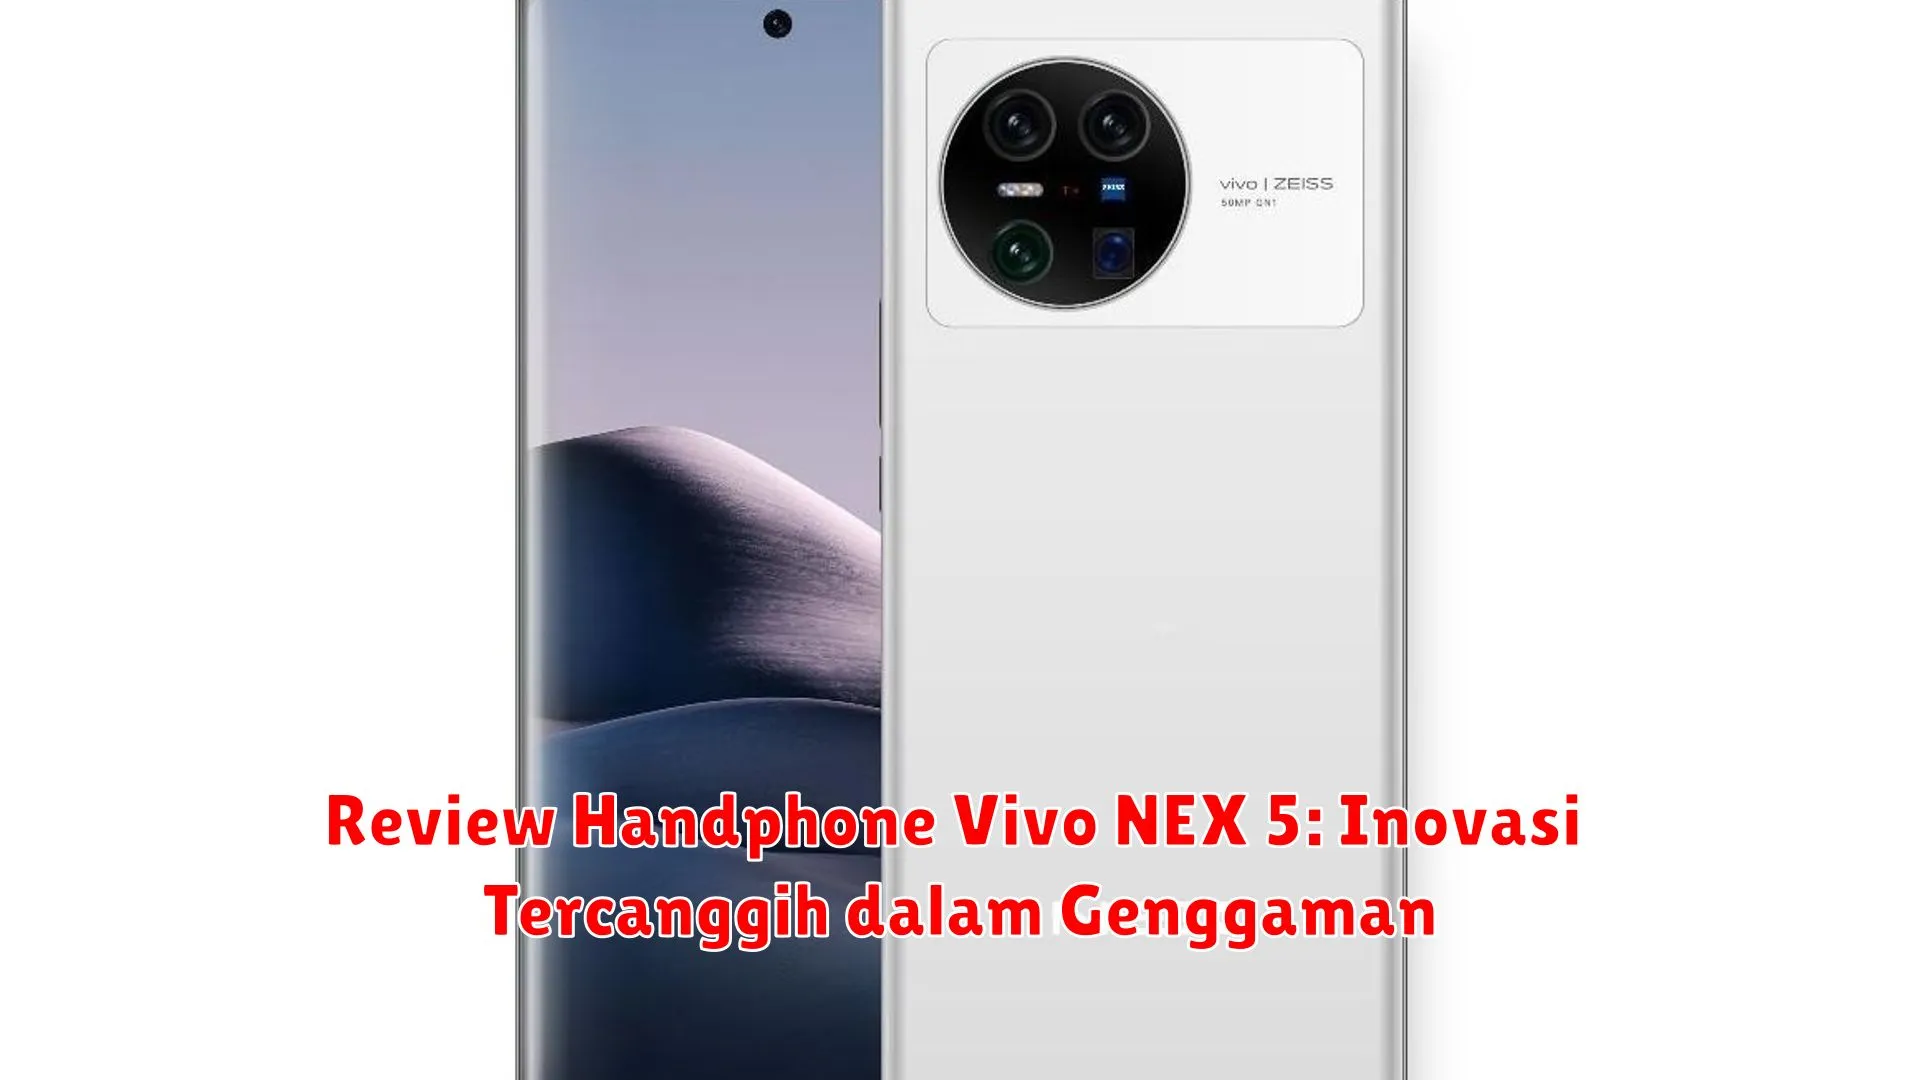 Review Handphone Vivo NEX 5: Inovasi Tercanggih dalam Genggaman